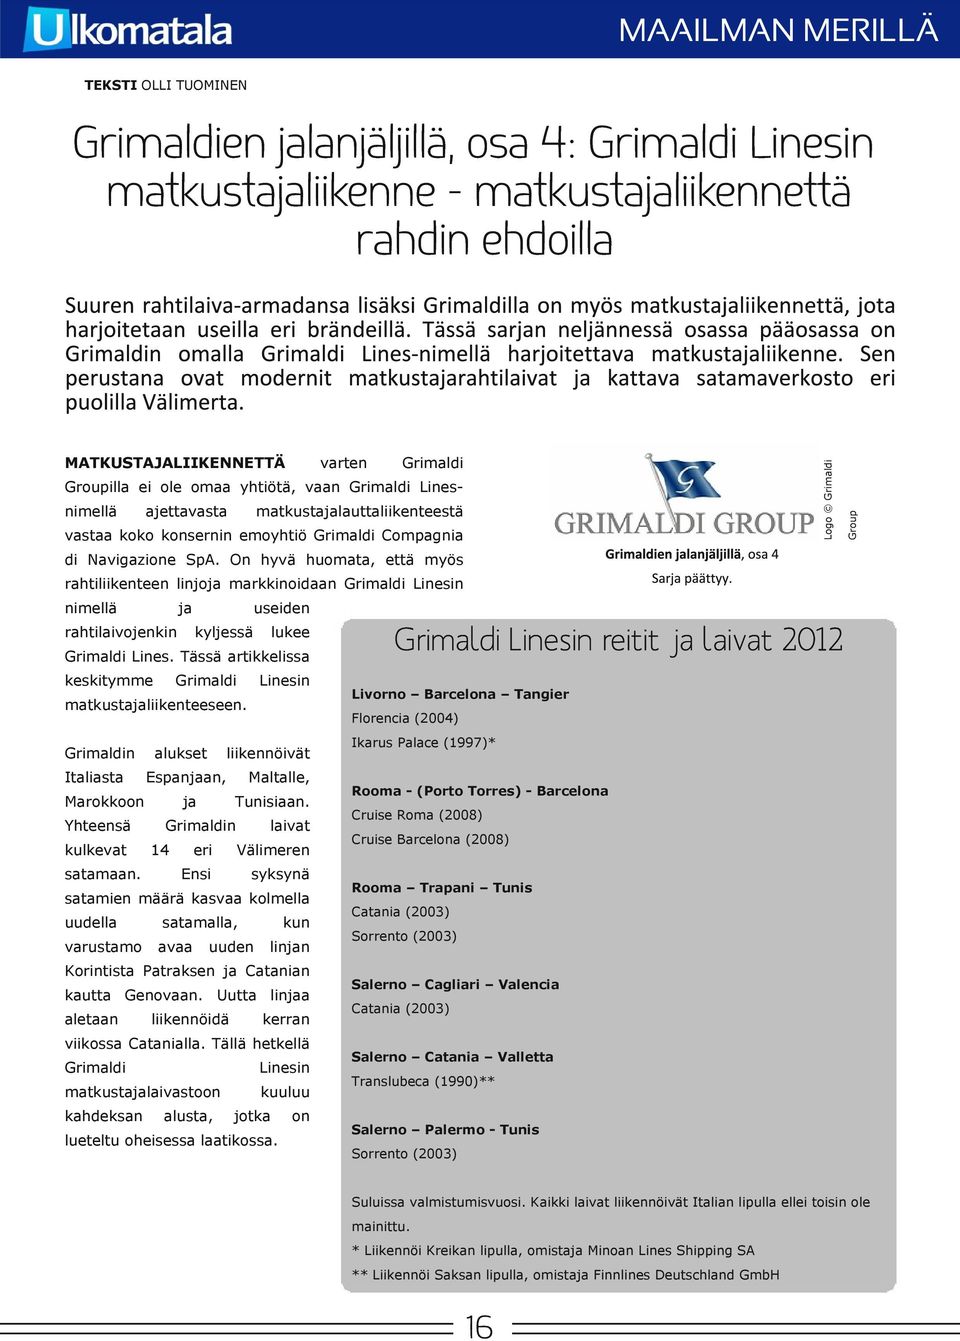 On hyvä huomata, että Group Grimaldien lanjäljillä, osa 4: Grimaldi Linesin matkustaliikenne - matkustaliikennettä rahdin ehdoilla rahtiliikenteen linjo markkinoidaan Grimaldi Linesin nimellä